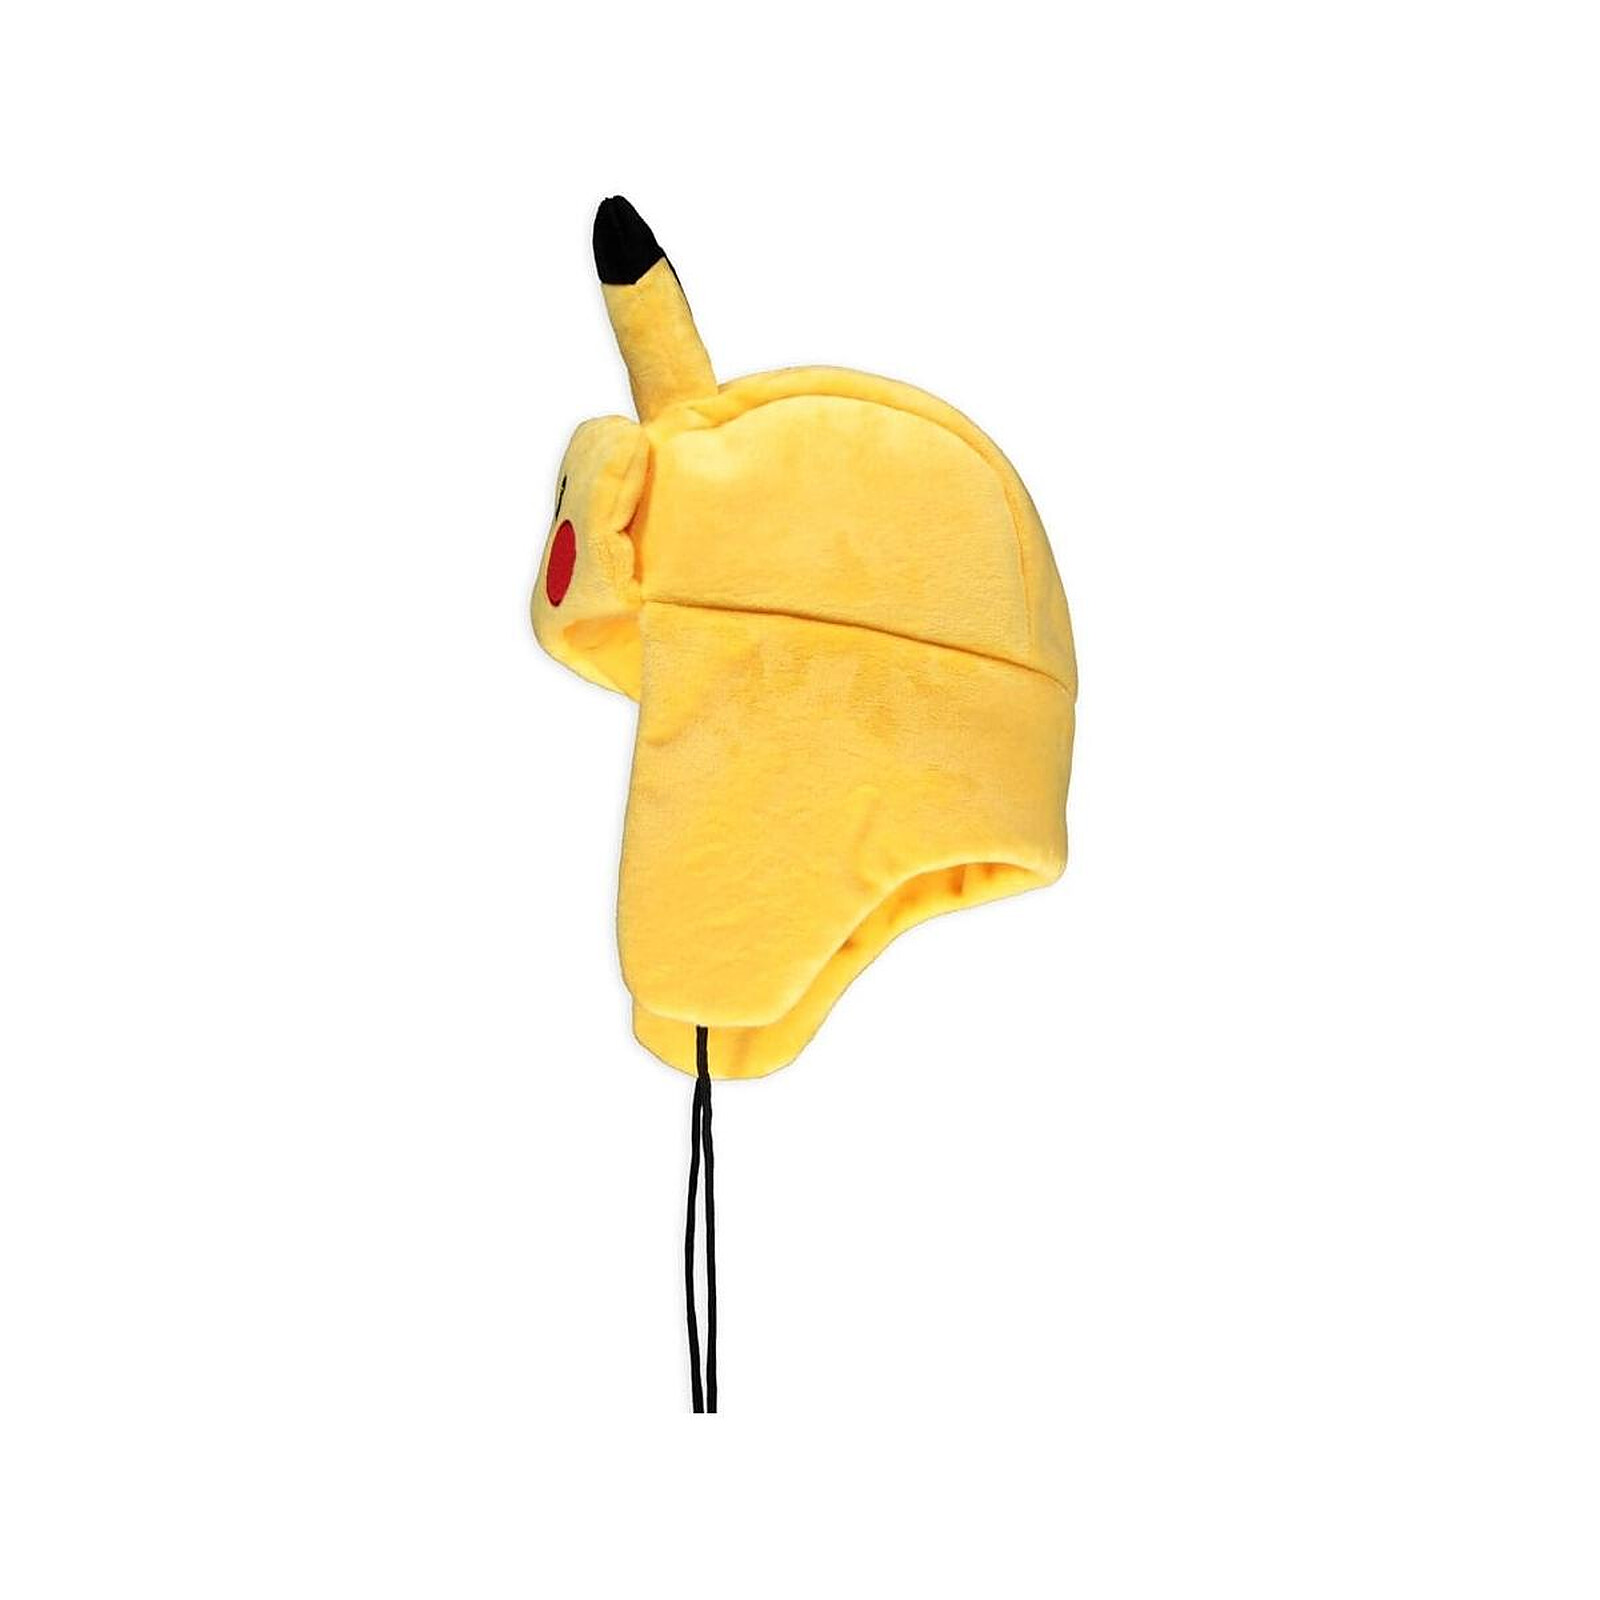 Pokémon - Bonnet de trappeur Pikachu femme 56 cm - Bonnet - LDLC